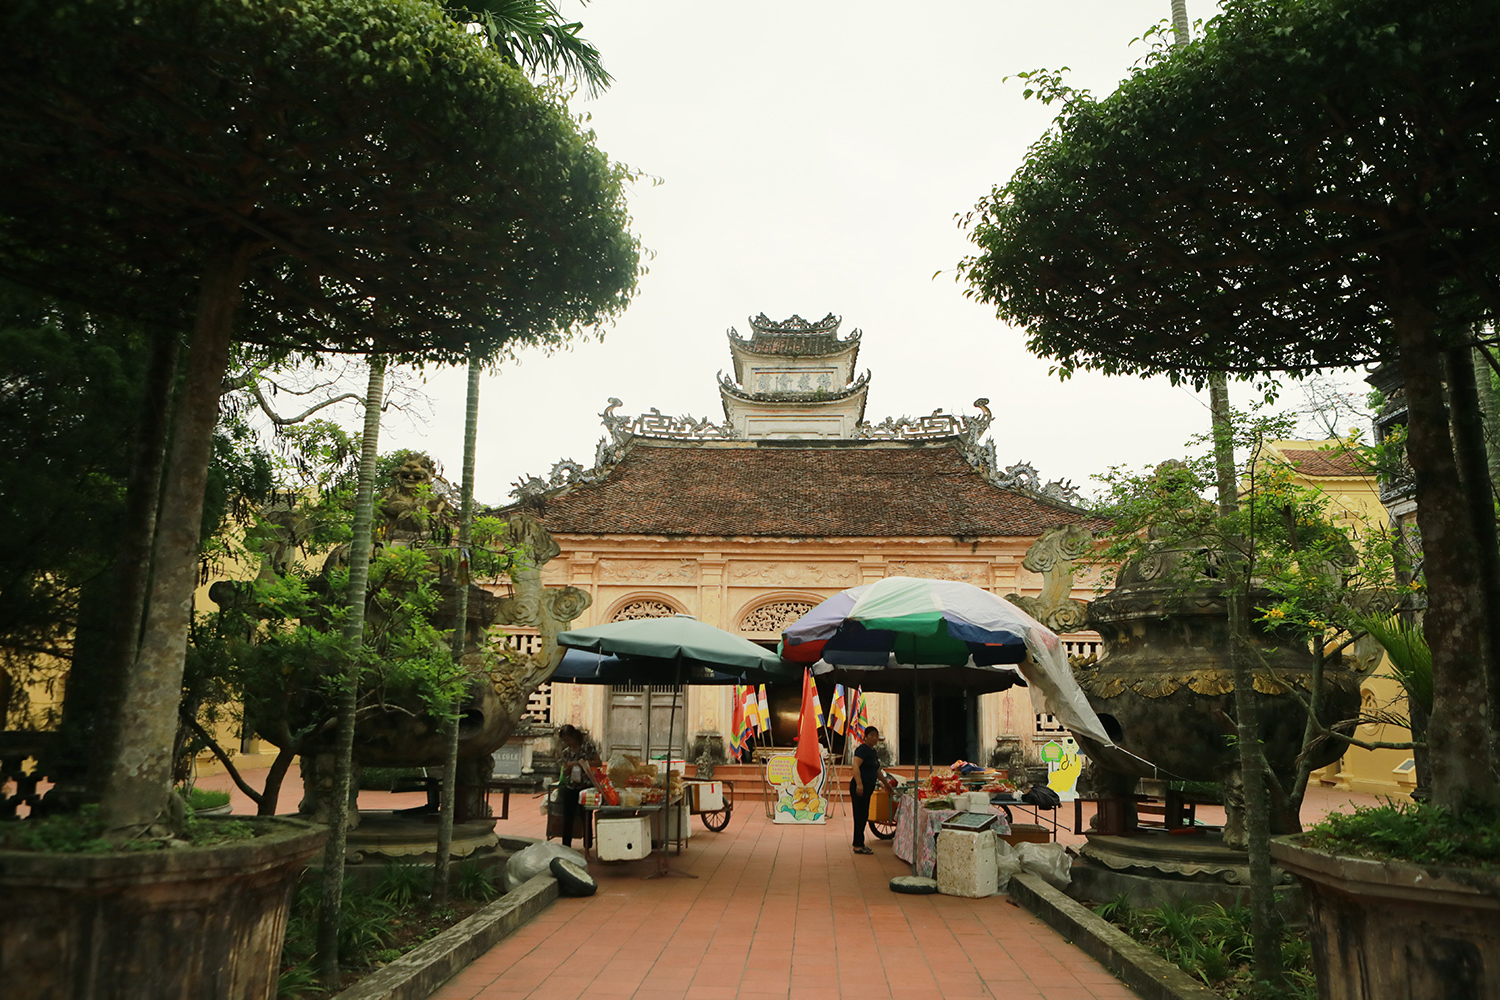 Chùa Cổ Lễ, thị trấn Cổ Lễ (huyện Trực Ninh, Nam Định) là một trong những danh lam thắng cảnh nổi tiếng, một di tích lịch sử – văn hoá đặc biệt cấp Quốc gia của vùng đồng bằng châu thổ sông Hồng